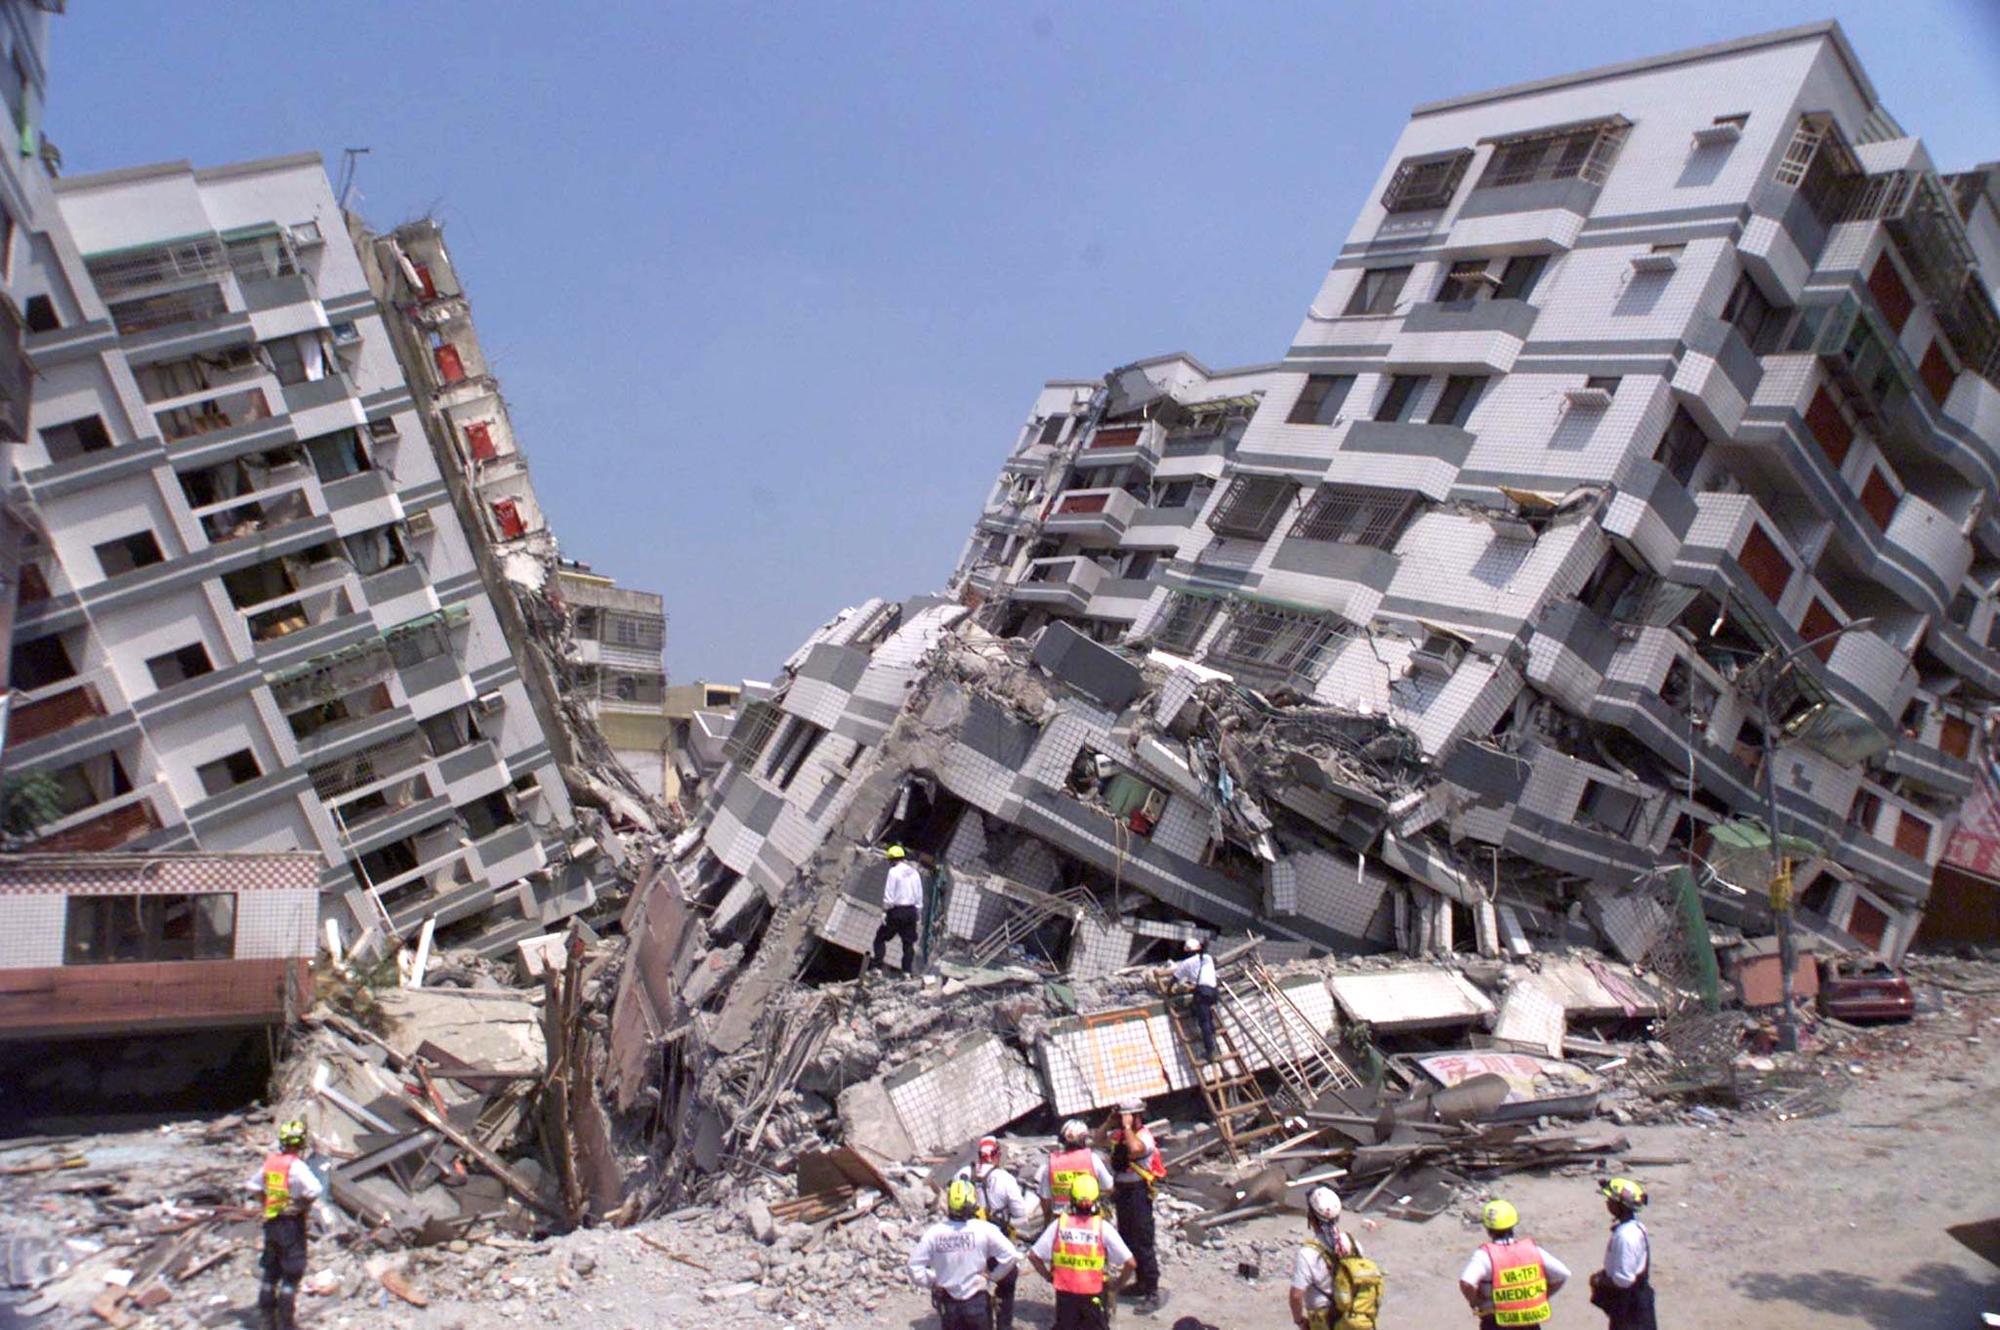 精選書摘比地震更致命的建築殺人關於耐震我們必須知道什麼 報導者 The Reporter